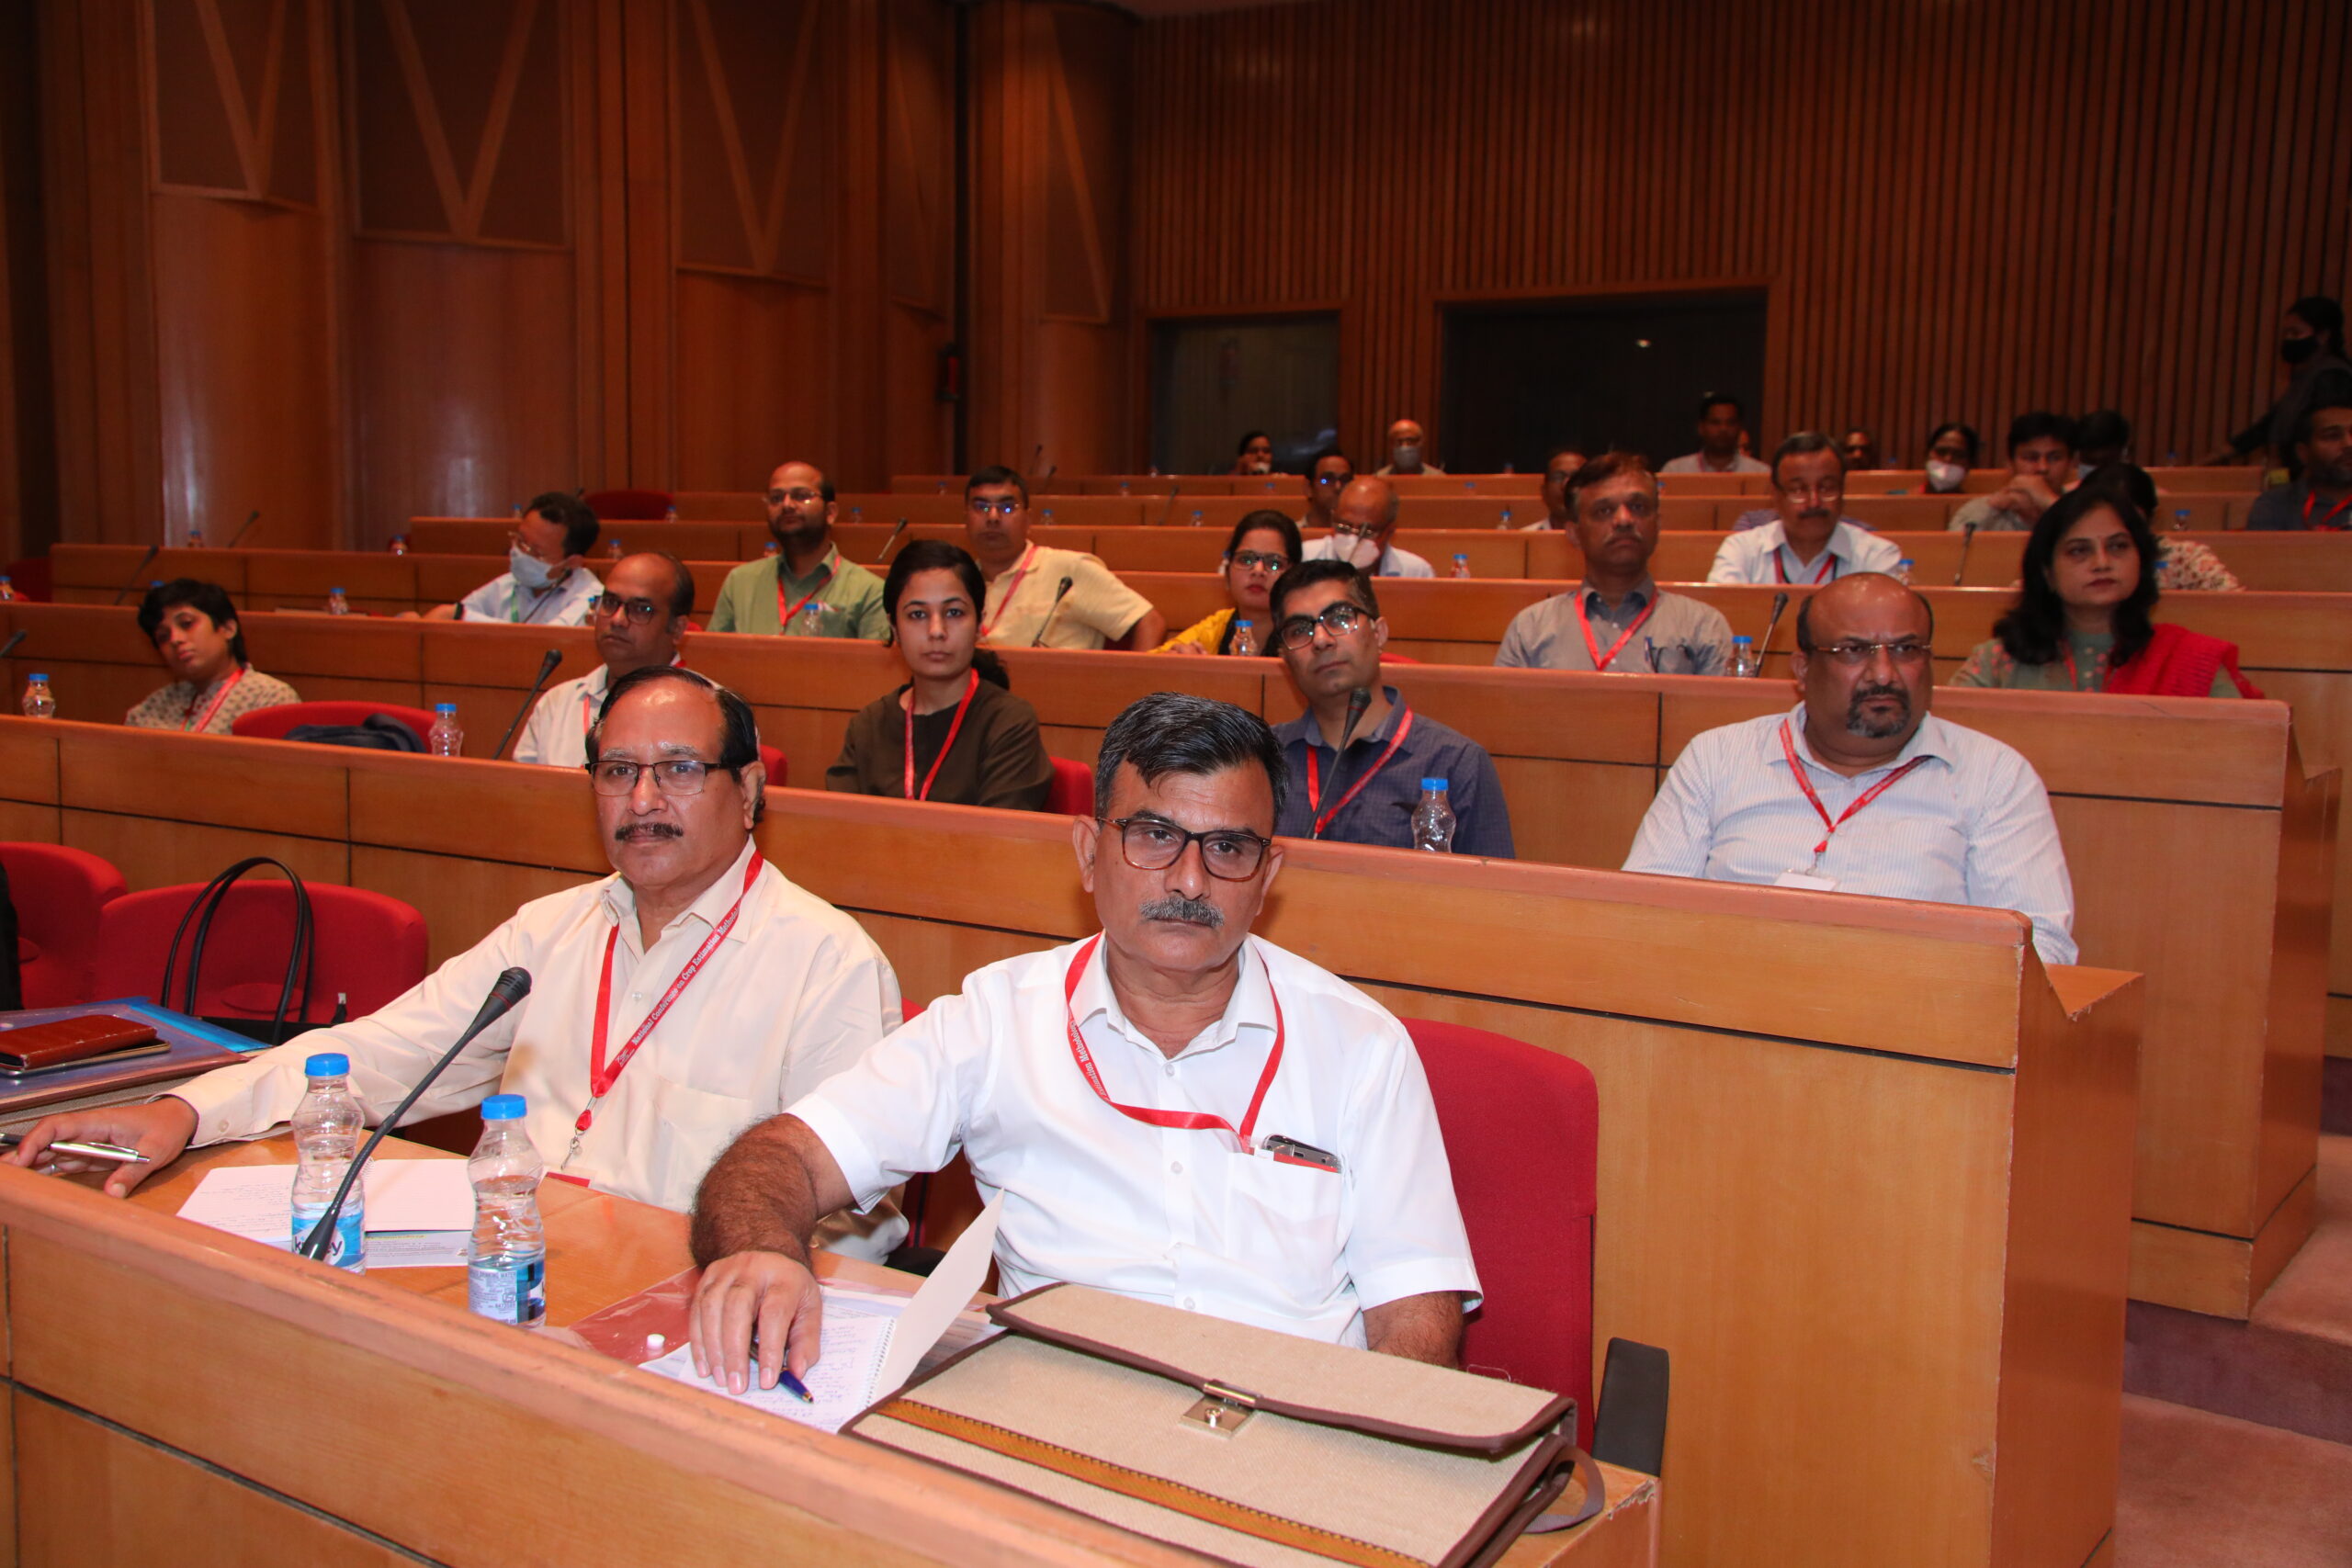 Image-National Conference on Crop Estimation Methodology-20